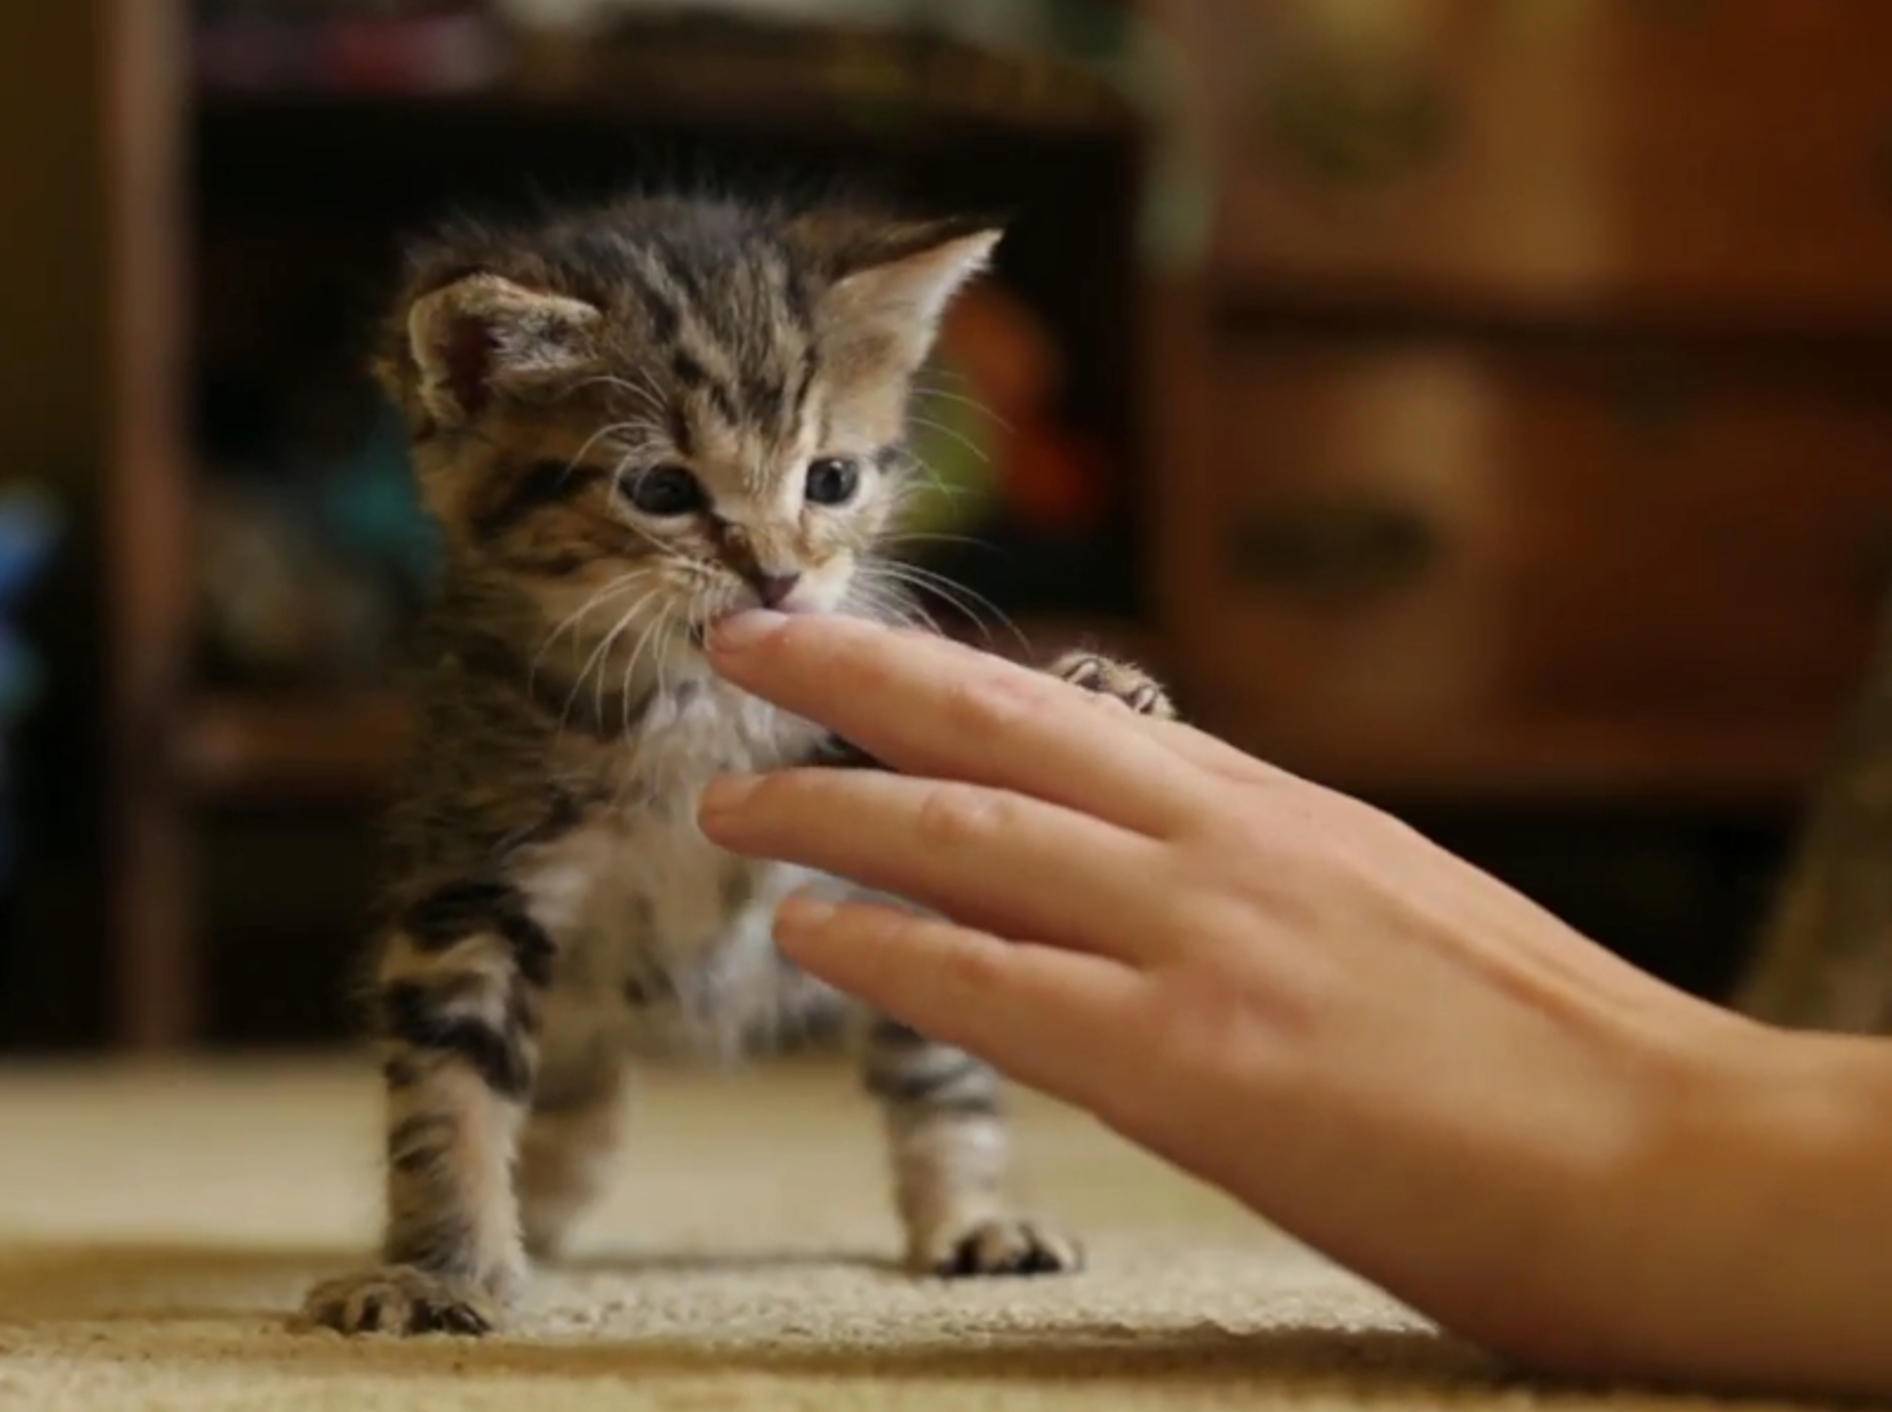 Kleines Kätzchen: "Ein schönes Spielzeug, diese Hand!" – Bild: YouTube / The Pet Collective